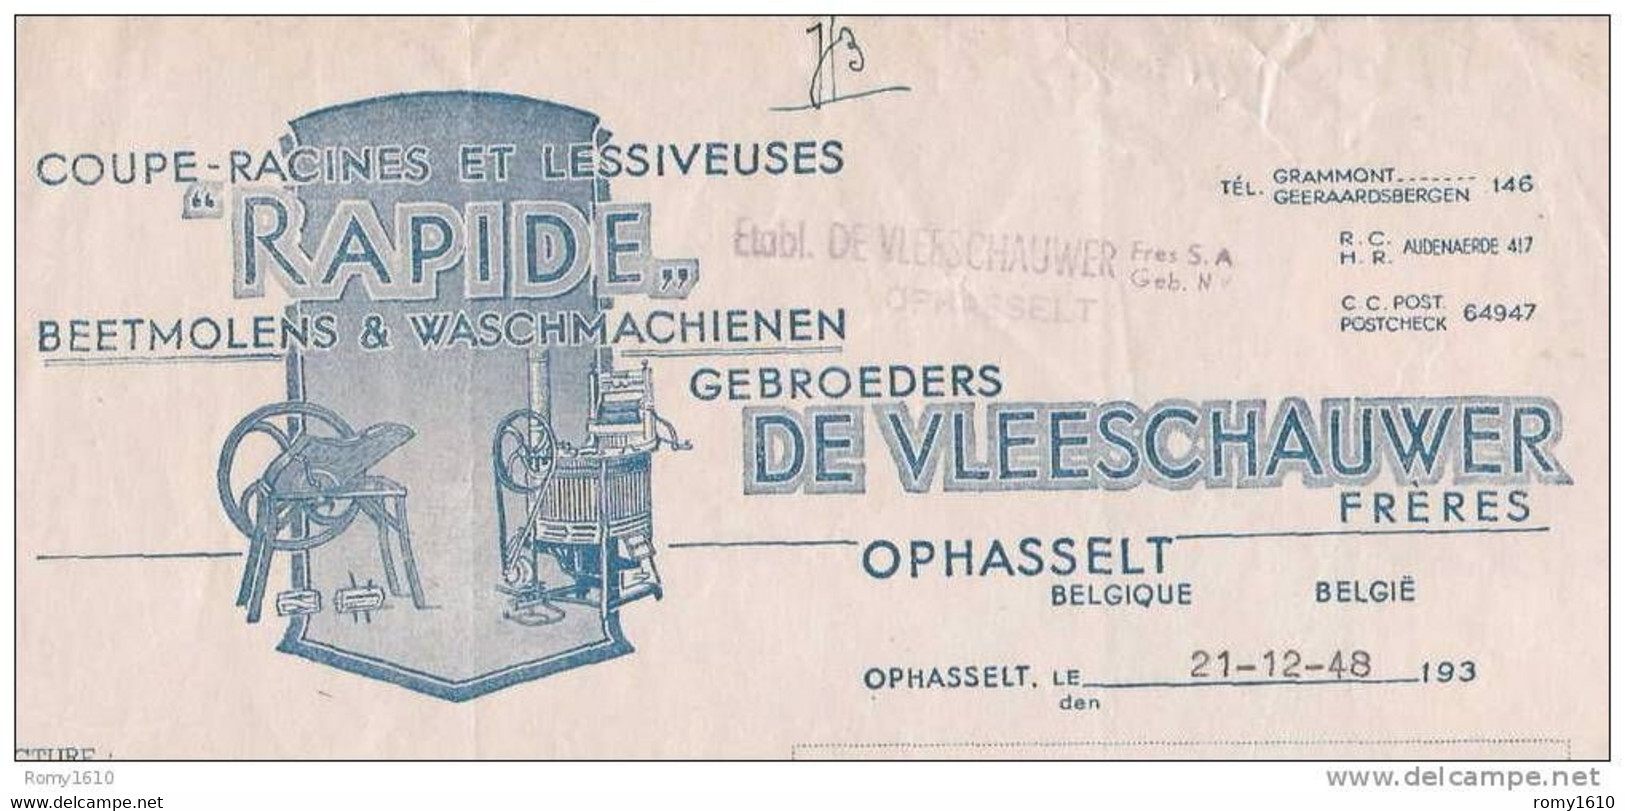 OPHASSELT - Superbe Facture Des Etablissements De Vleeschauwer - Coupe-Racines, Lessiveuses (1948) - Agricultura